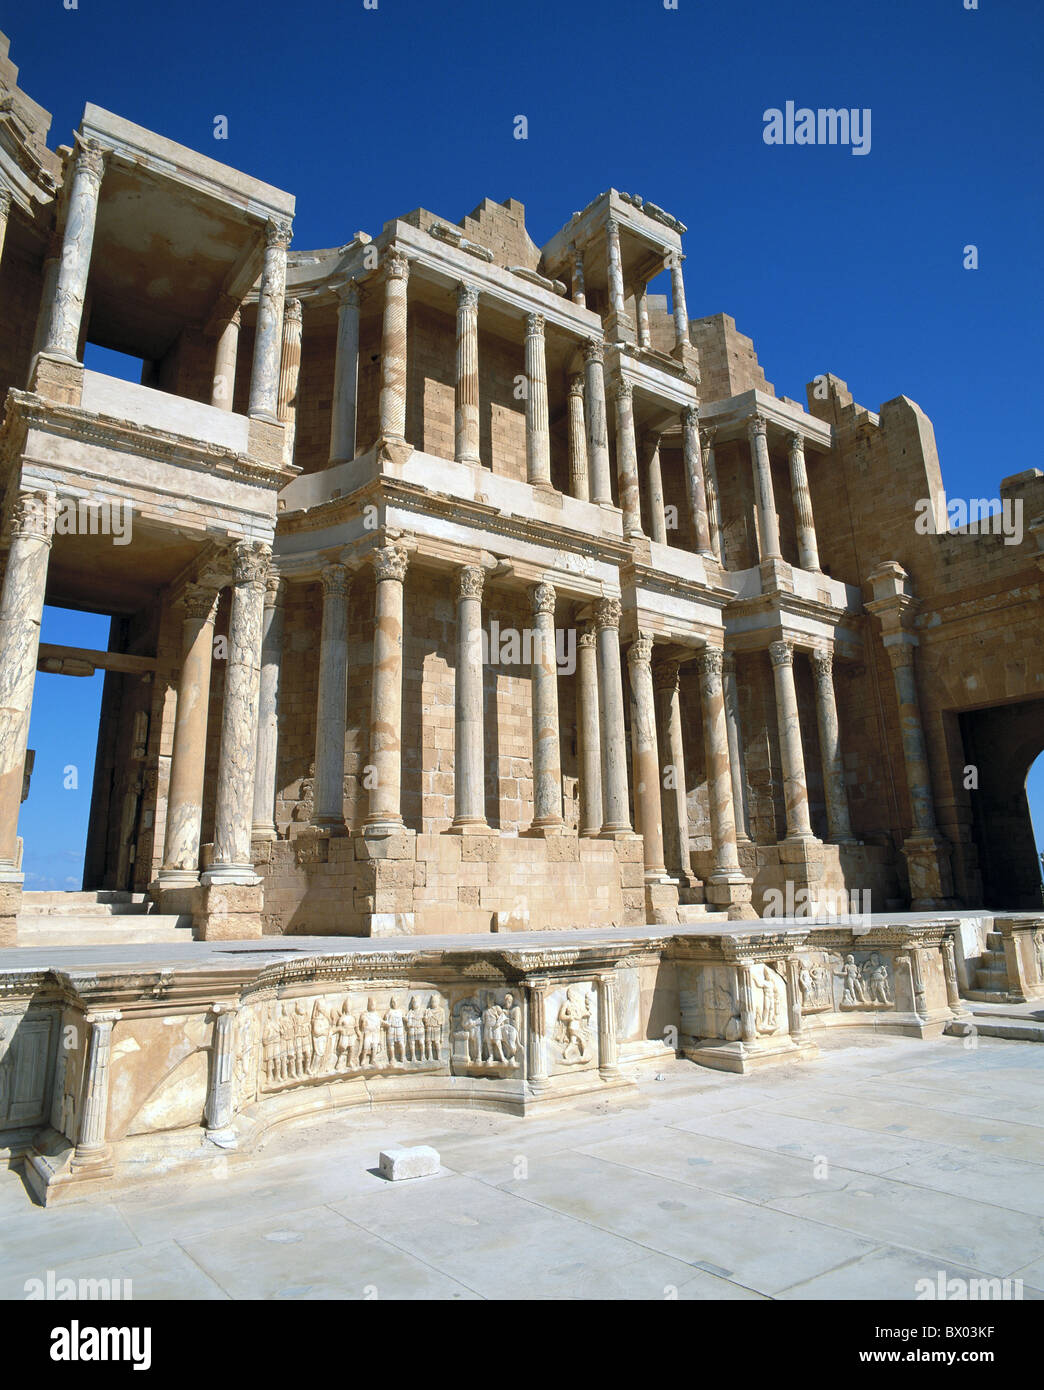 Un monde ancien antiquité romaine vestiges romains historiques Libye Sabratha theatre culturel mondial de l'UNESCO Banque D'Images